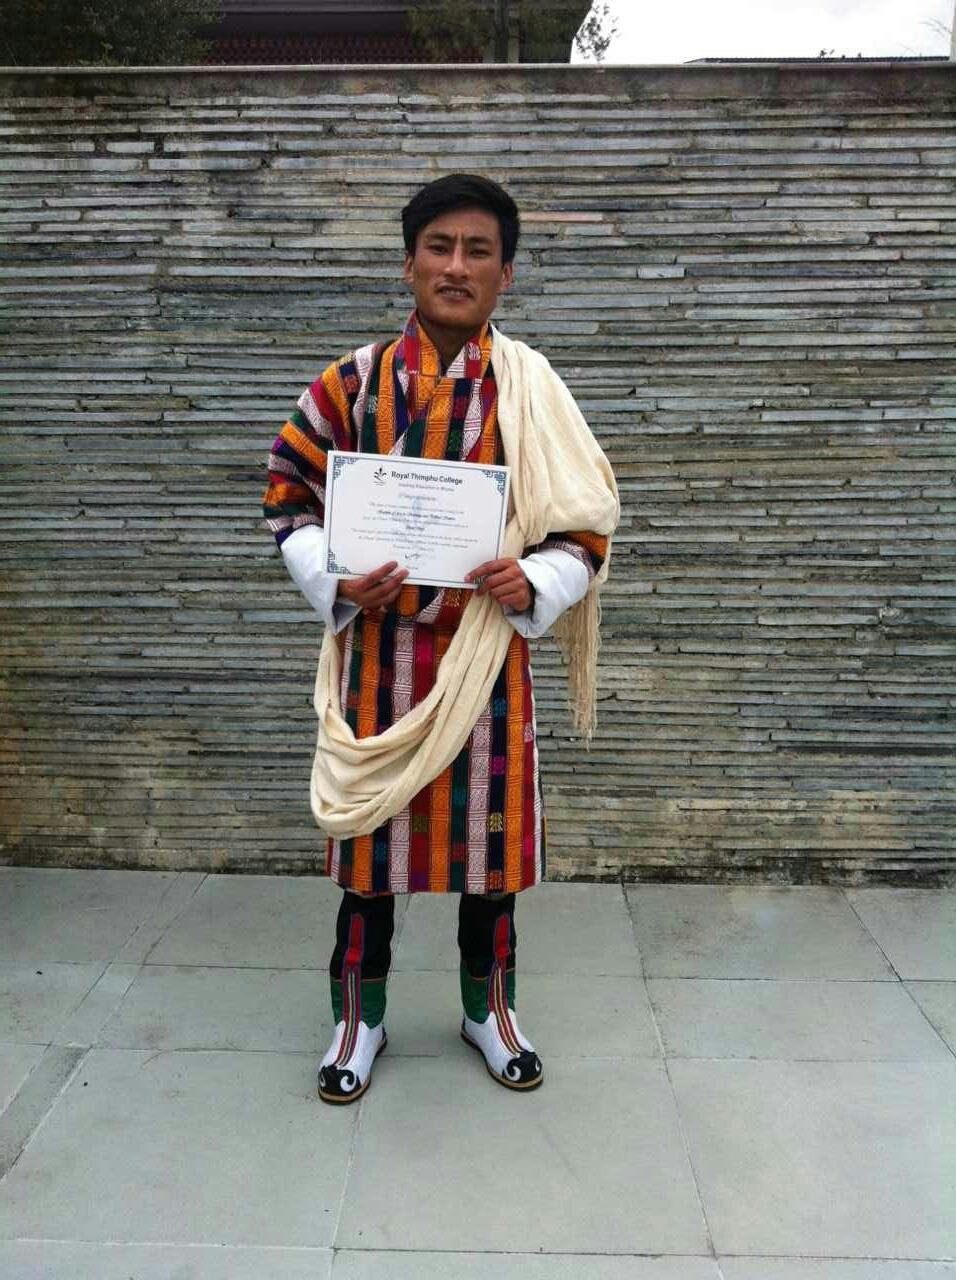 Choki Dorji